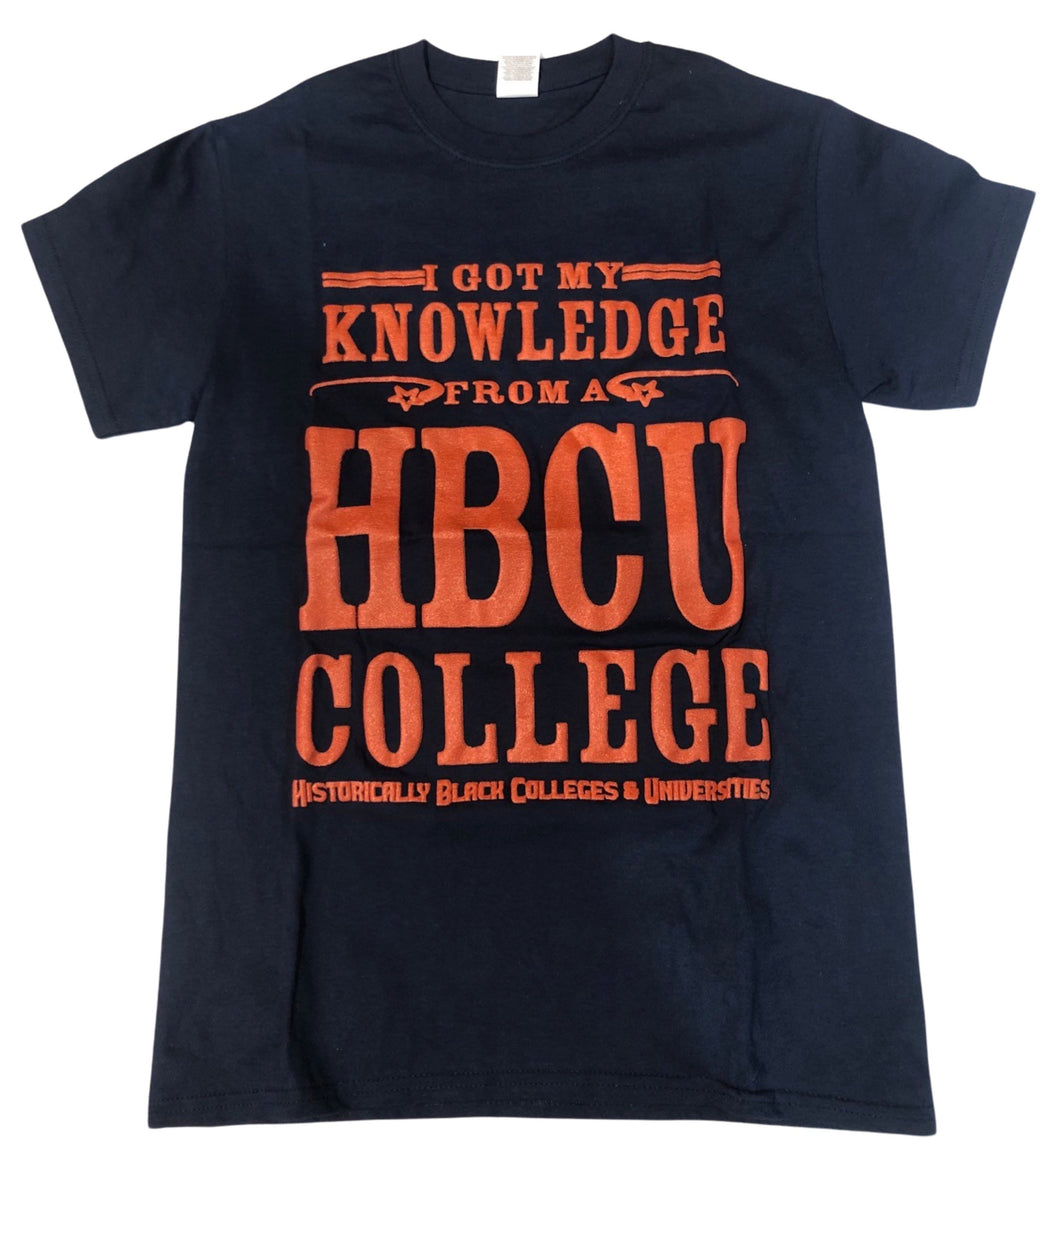 HBCU I Got My Knowledge From A HBCU College Navy Blue & Orange